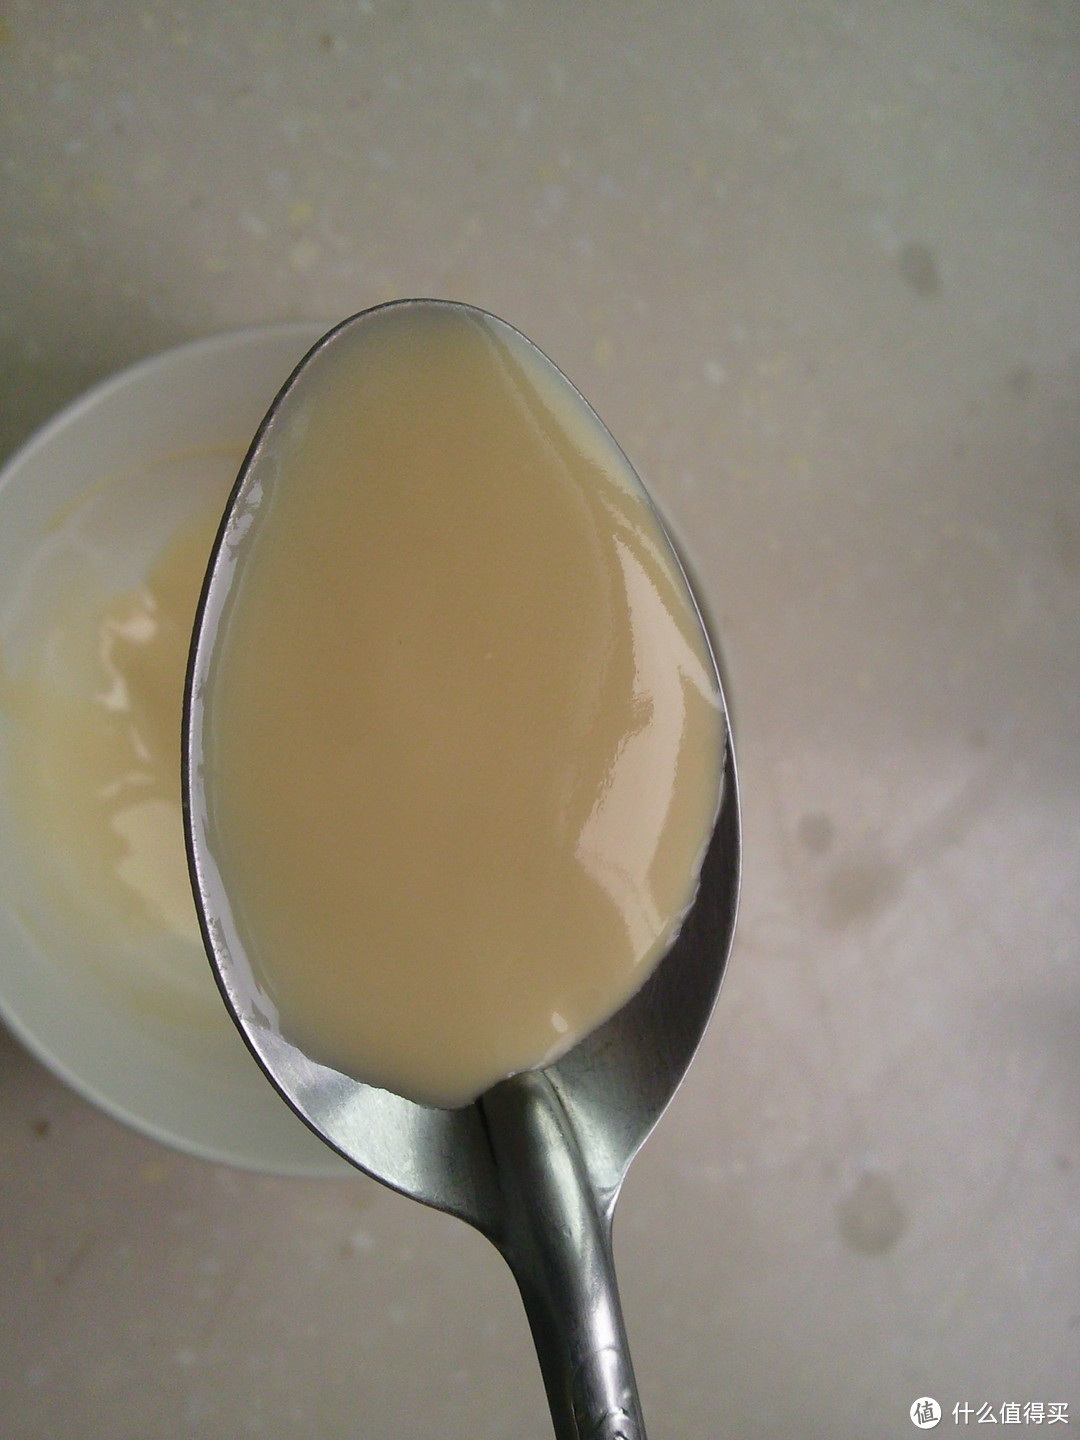 Lovin'spoonful 莱维斯普 酸奶机制酸奶